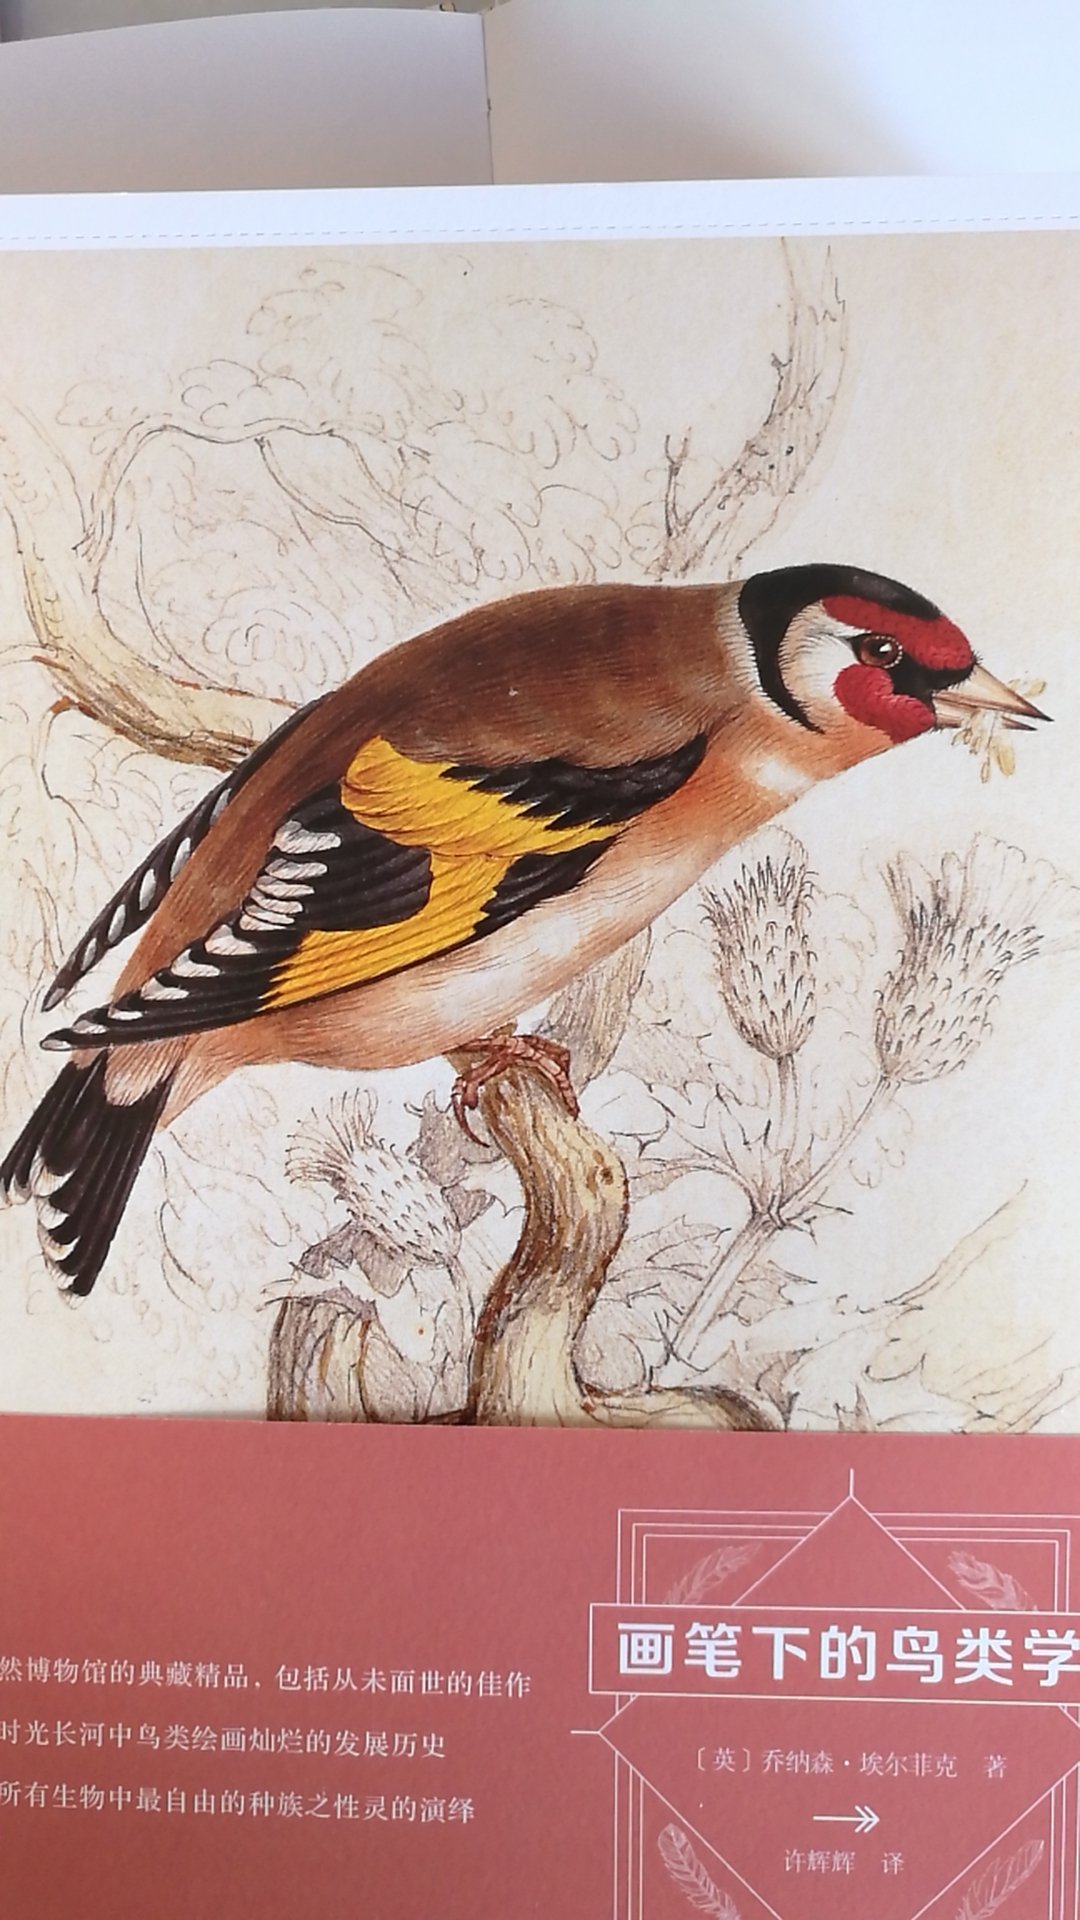 很细致的画，介绍鸟类知识也不错，适合爱好者收藏。